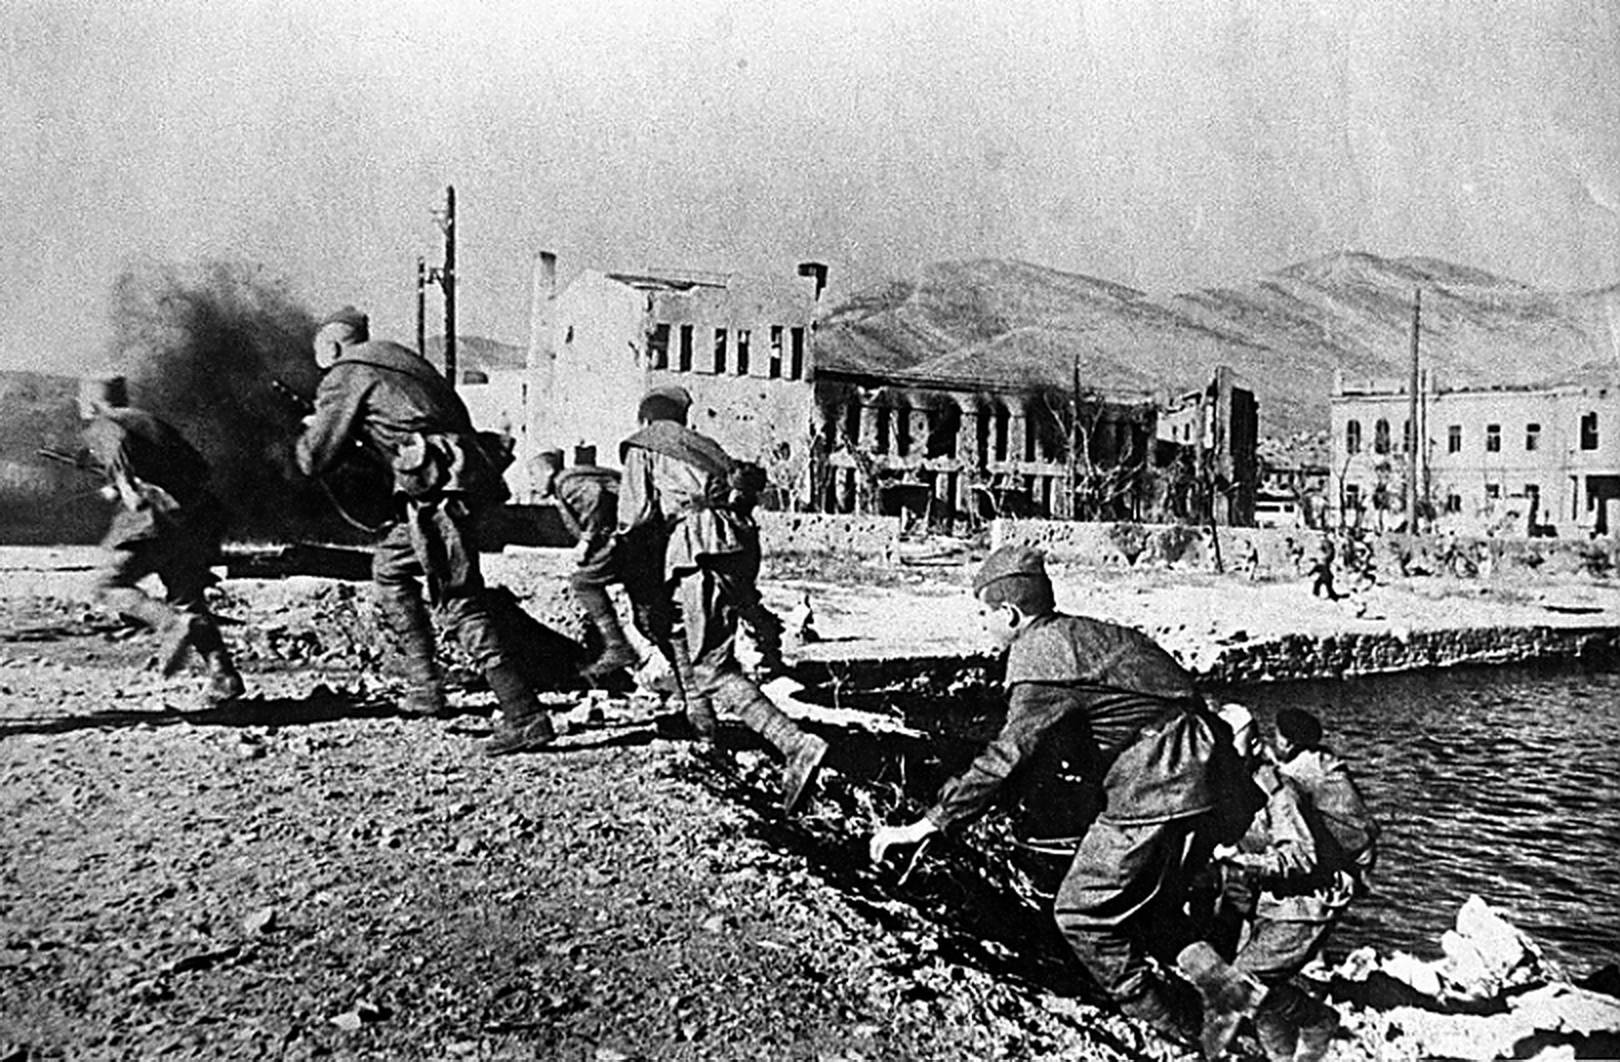 Части советской 18-й армии в бою на набережной Новороссийска